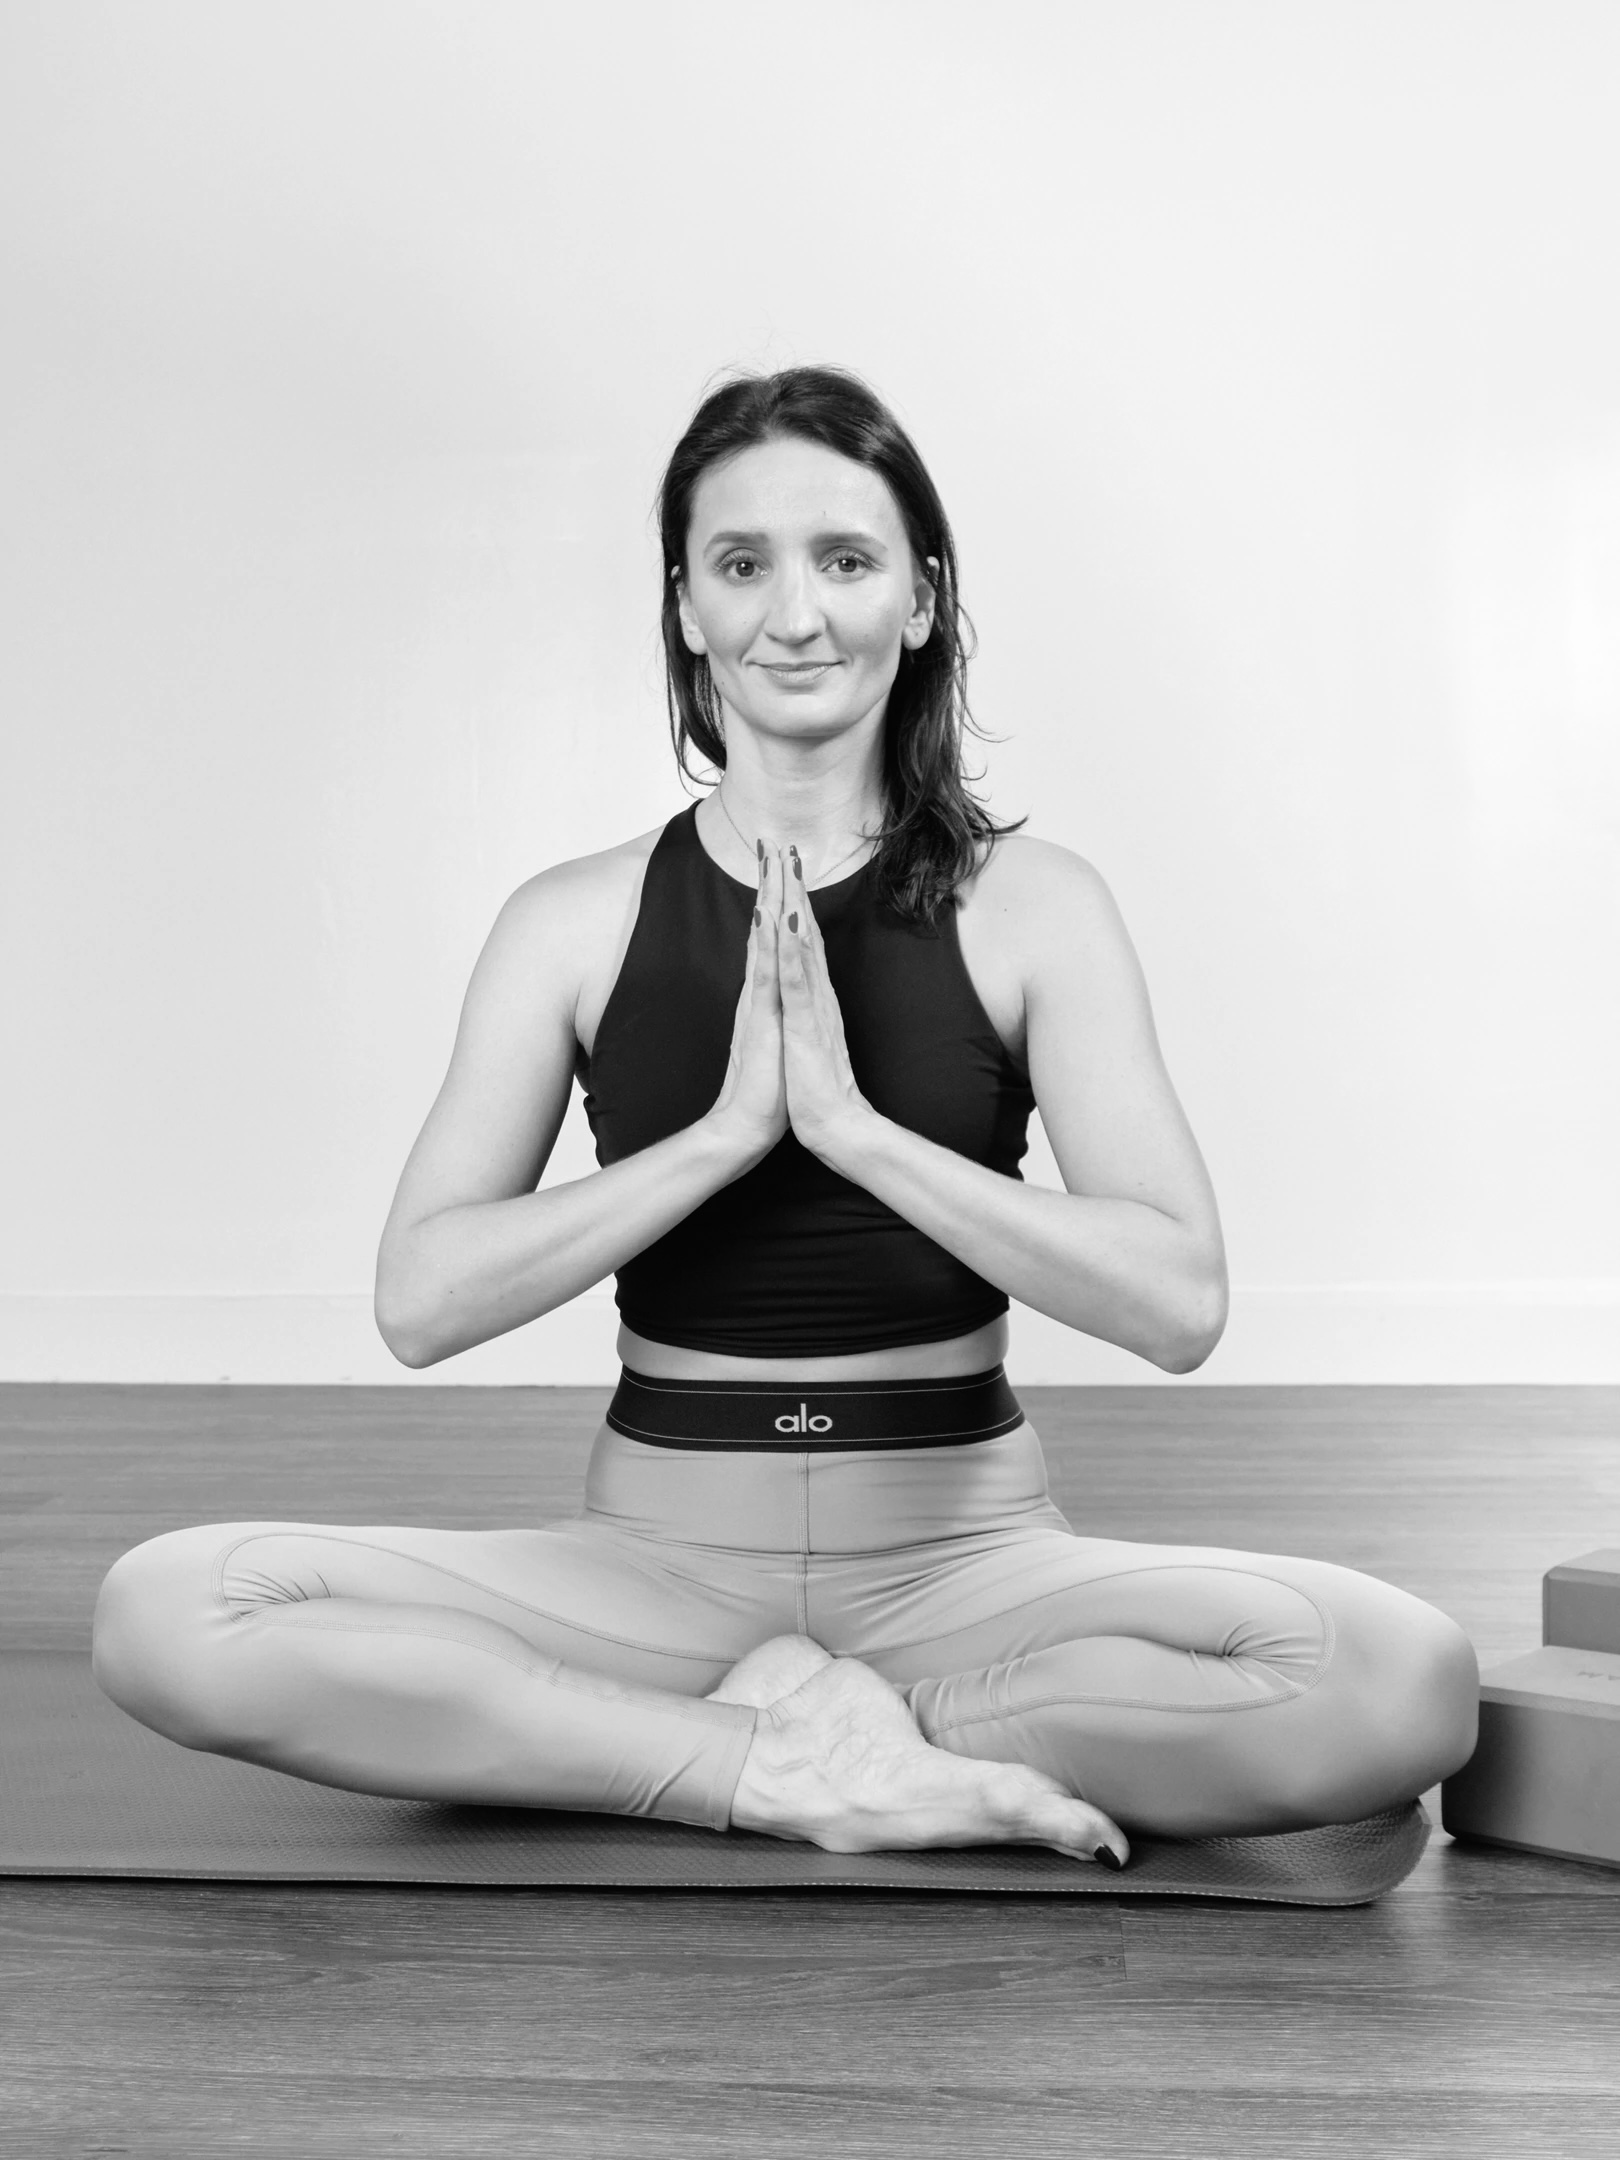 Maria Fürst Yoga